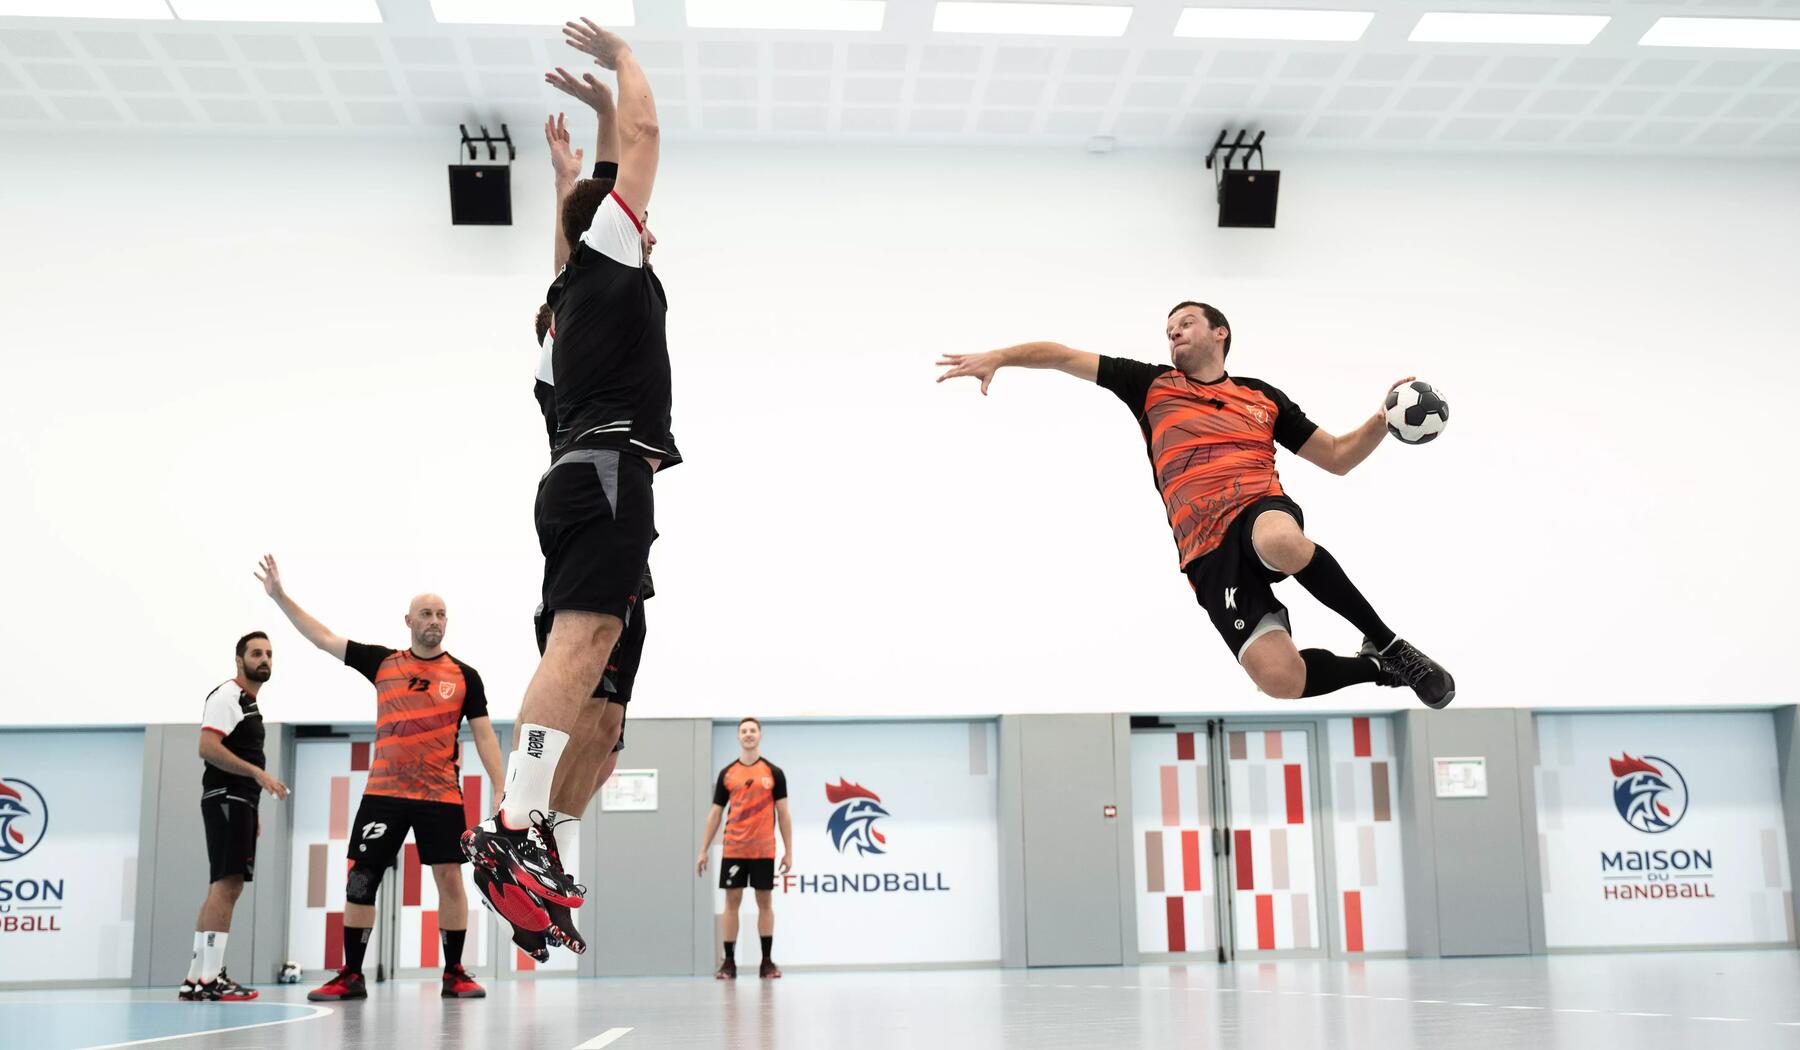 Mann springt hoch und setzt zum Wurf mit dem Handball an. Sein Gegenspiel versucht ihn den Wurf zu blocken